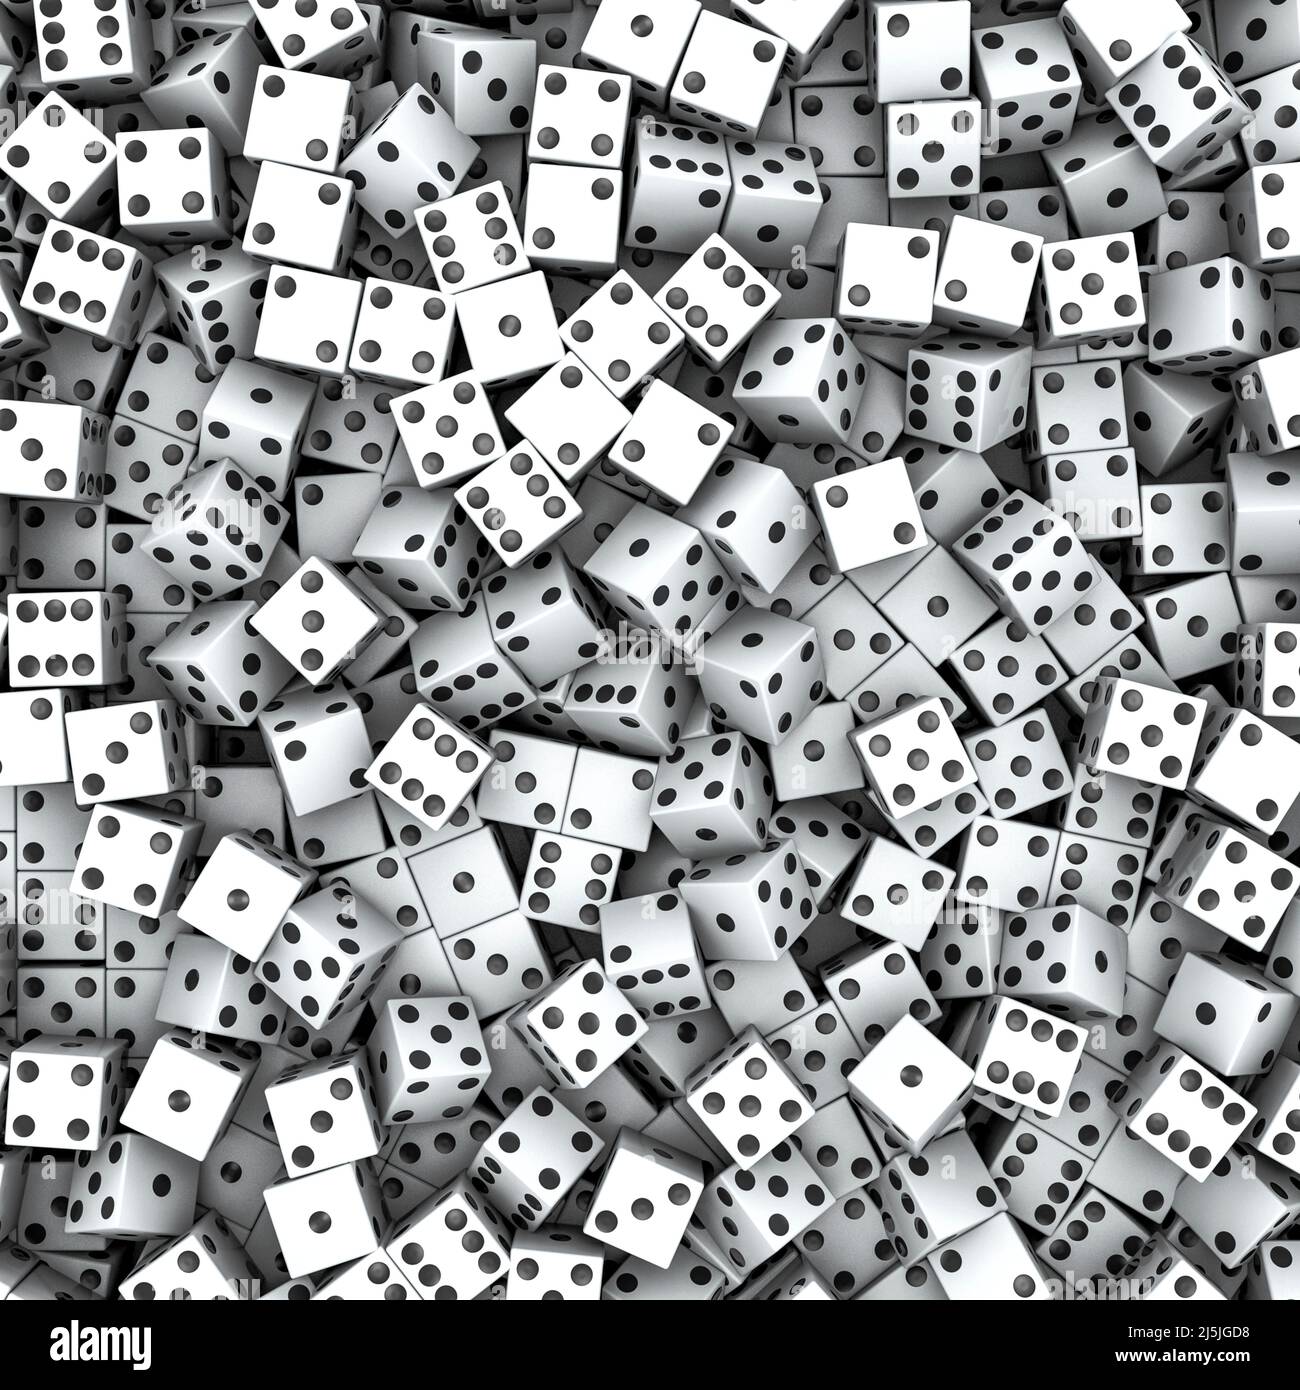 Hintergrund der weißen Würfel - 3D Illustration von Hunderten von weißen Würfeln mit schwarzen Flecken Stockfoto